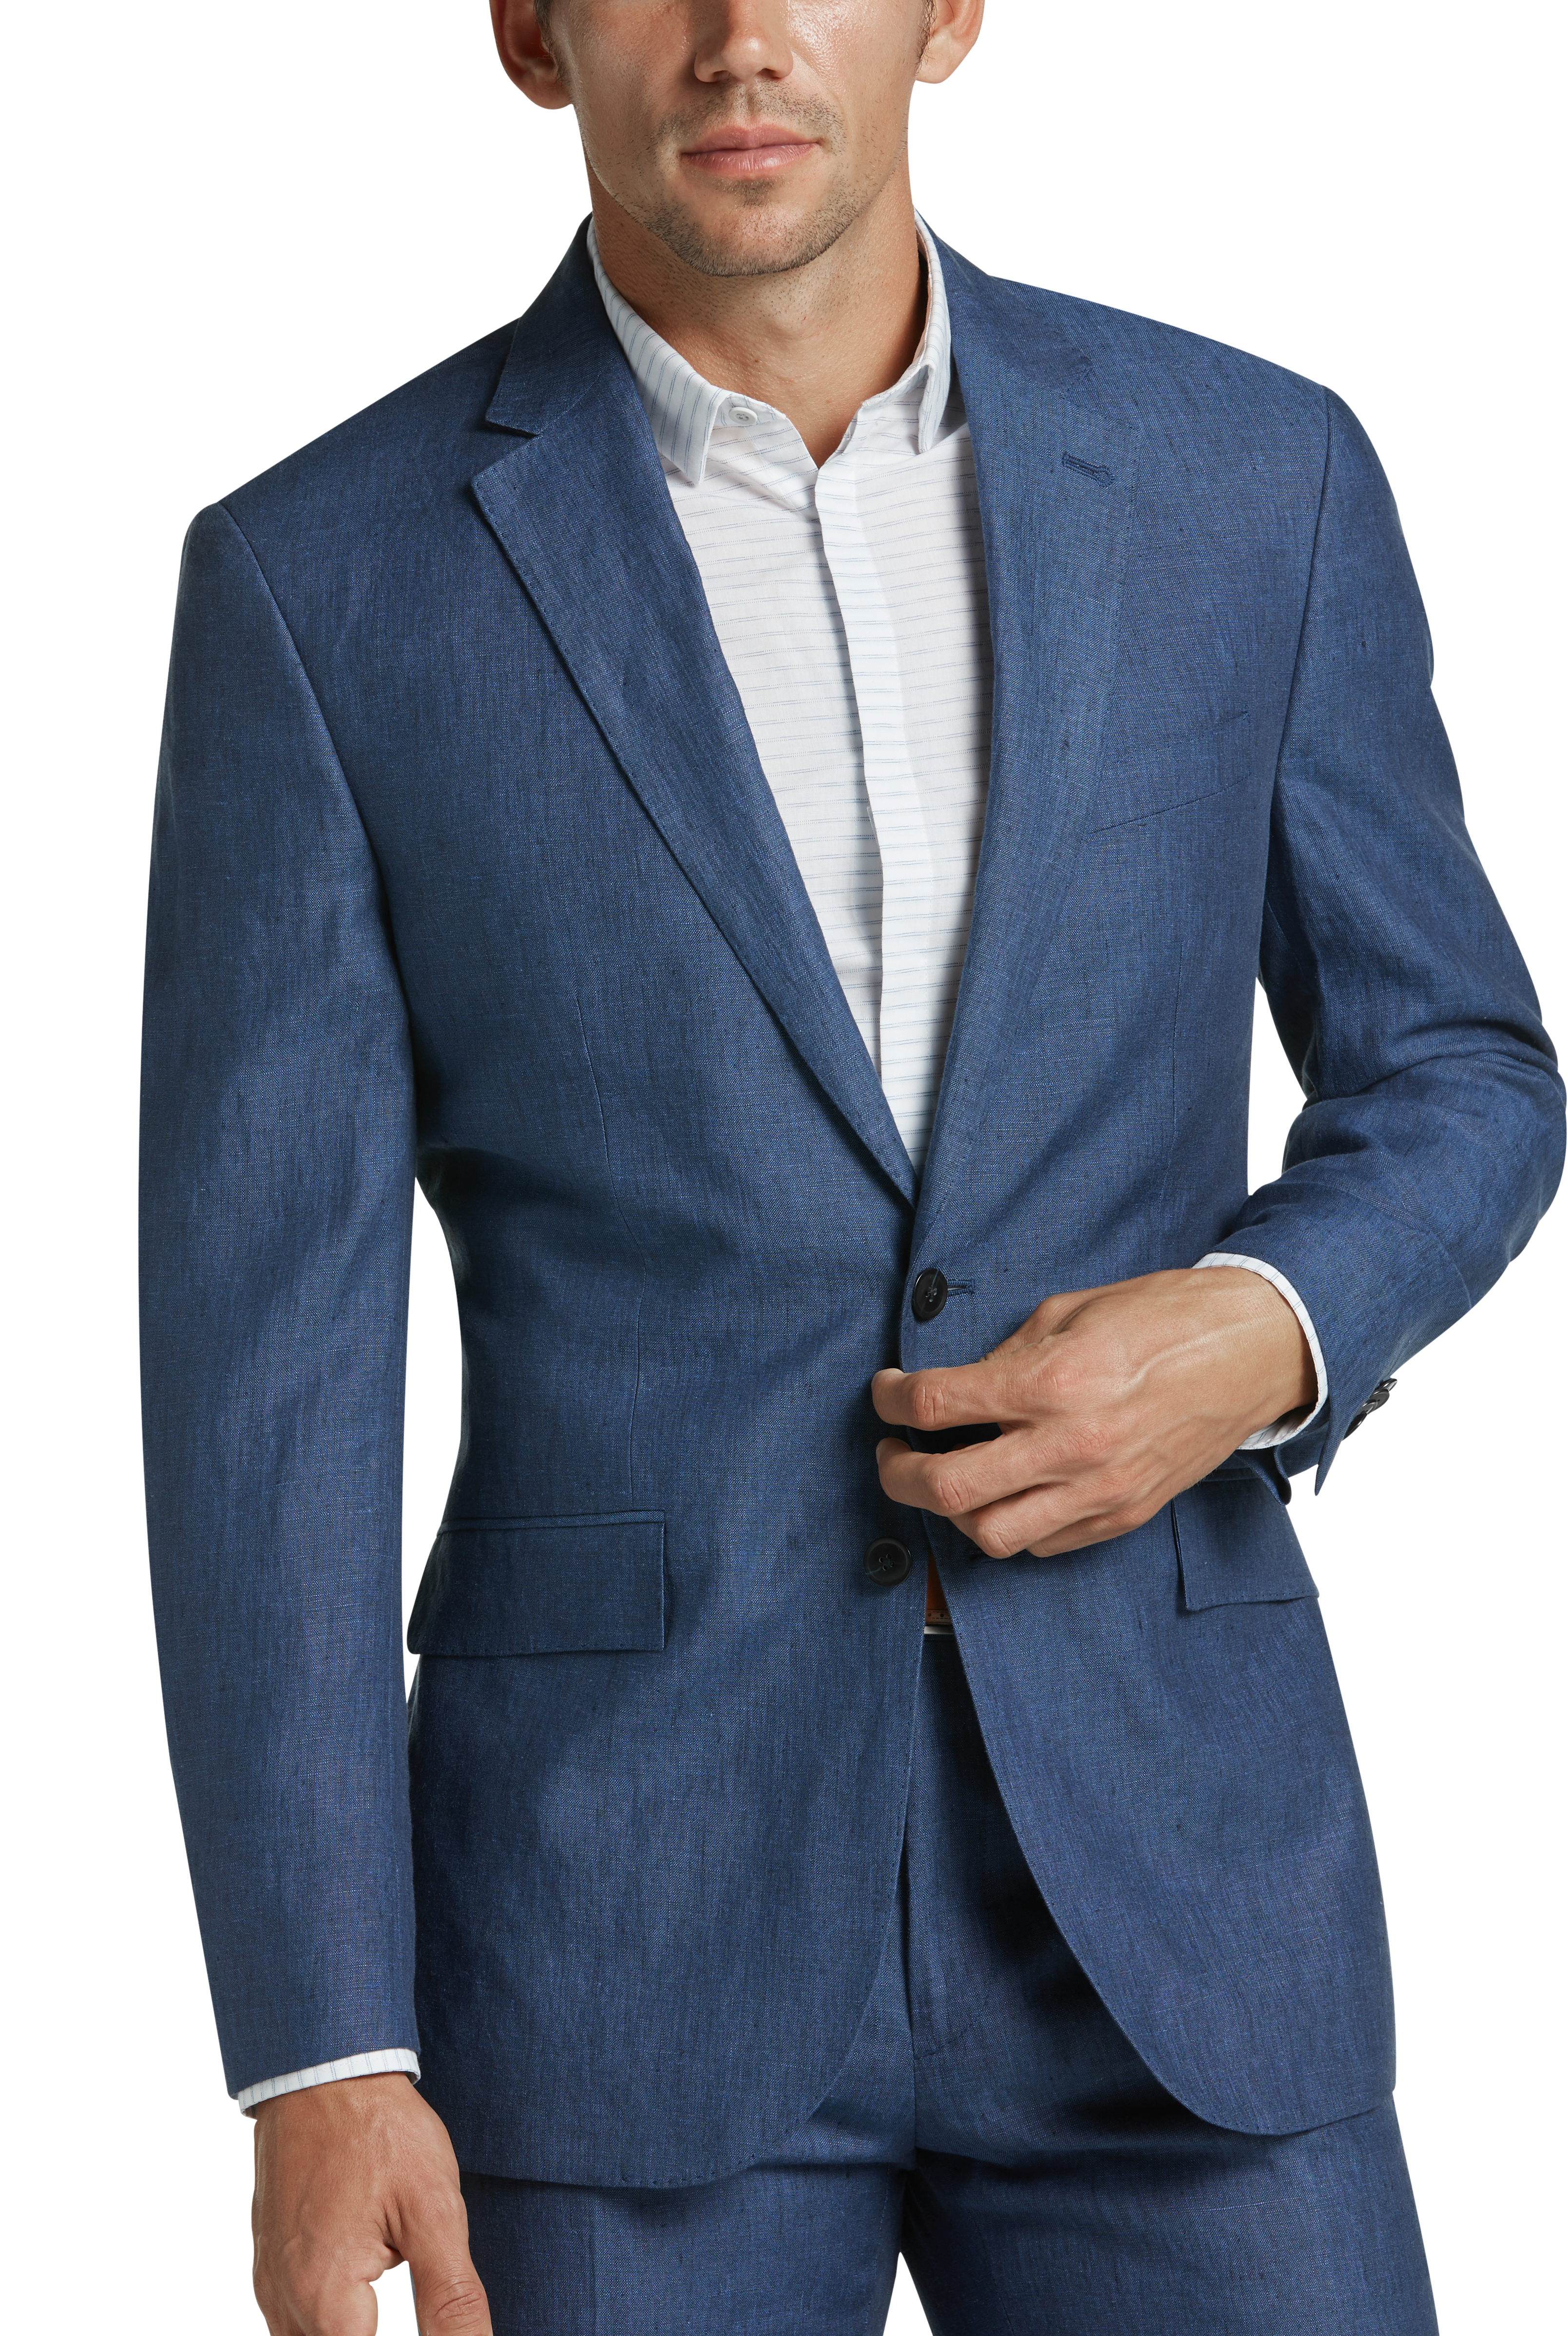 JOE Joseph Abboud Indigo Chambray Slim Fit Suit - Men's Sale | Men's ...